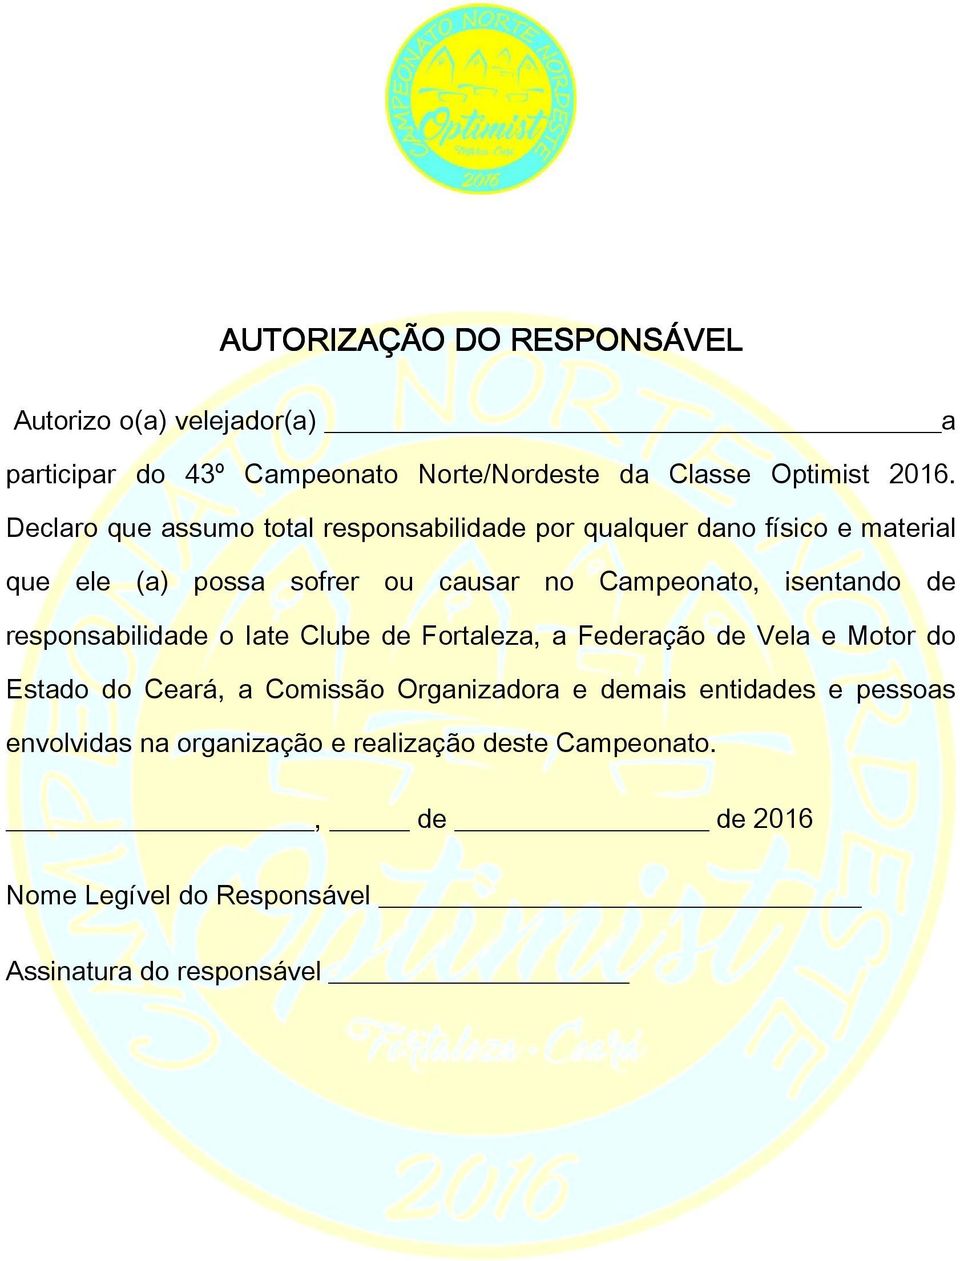 isentando de responsabilidade o Iate Clube de Fortaleza, a Federação de Vela e Motor do Estado do Ceará, a Comissão Organizadora e